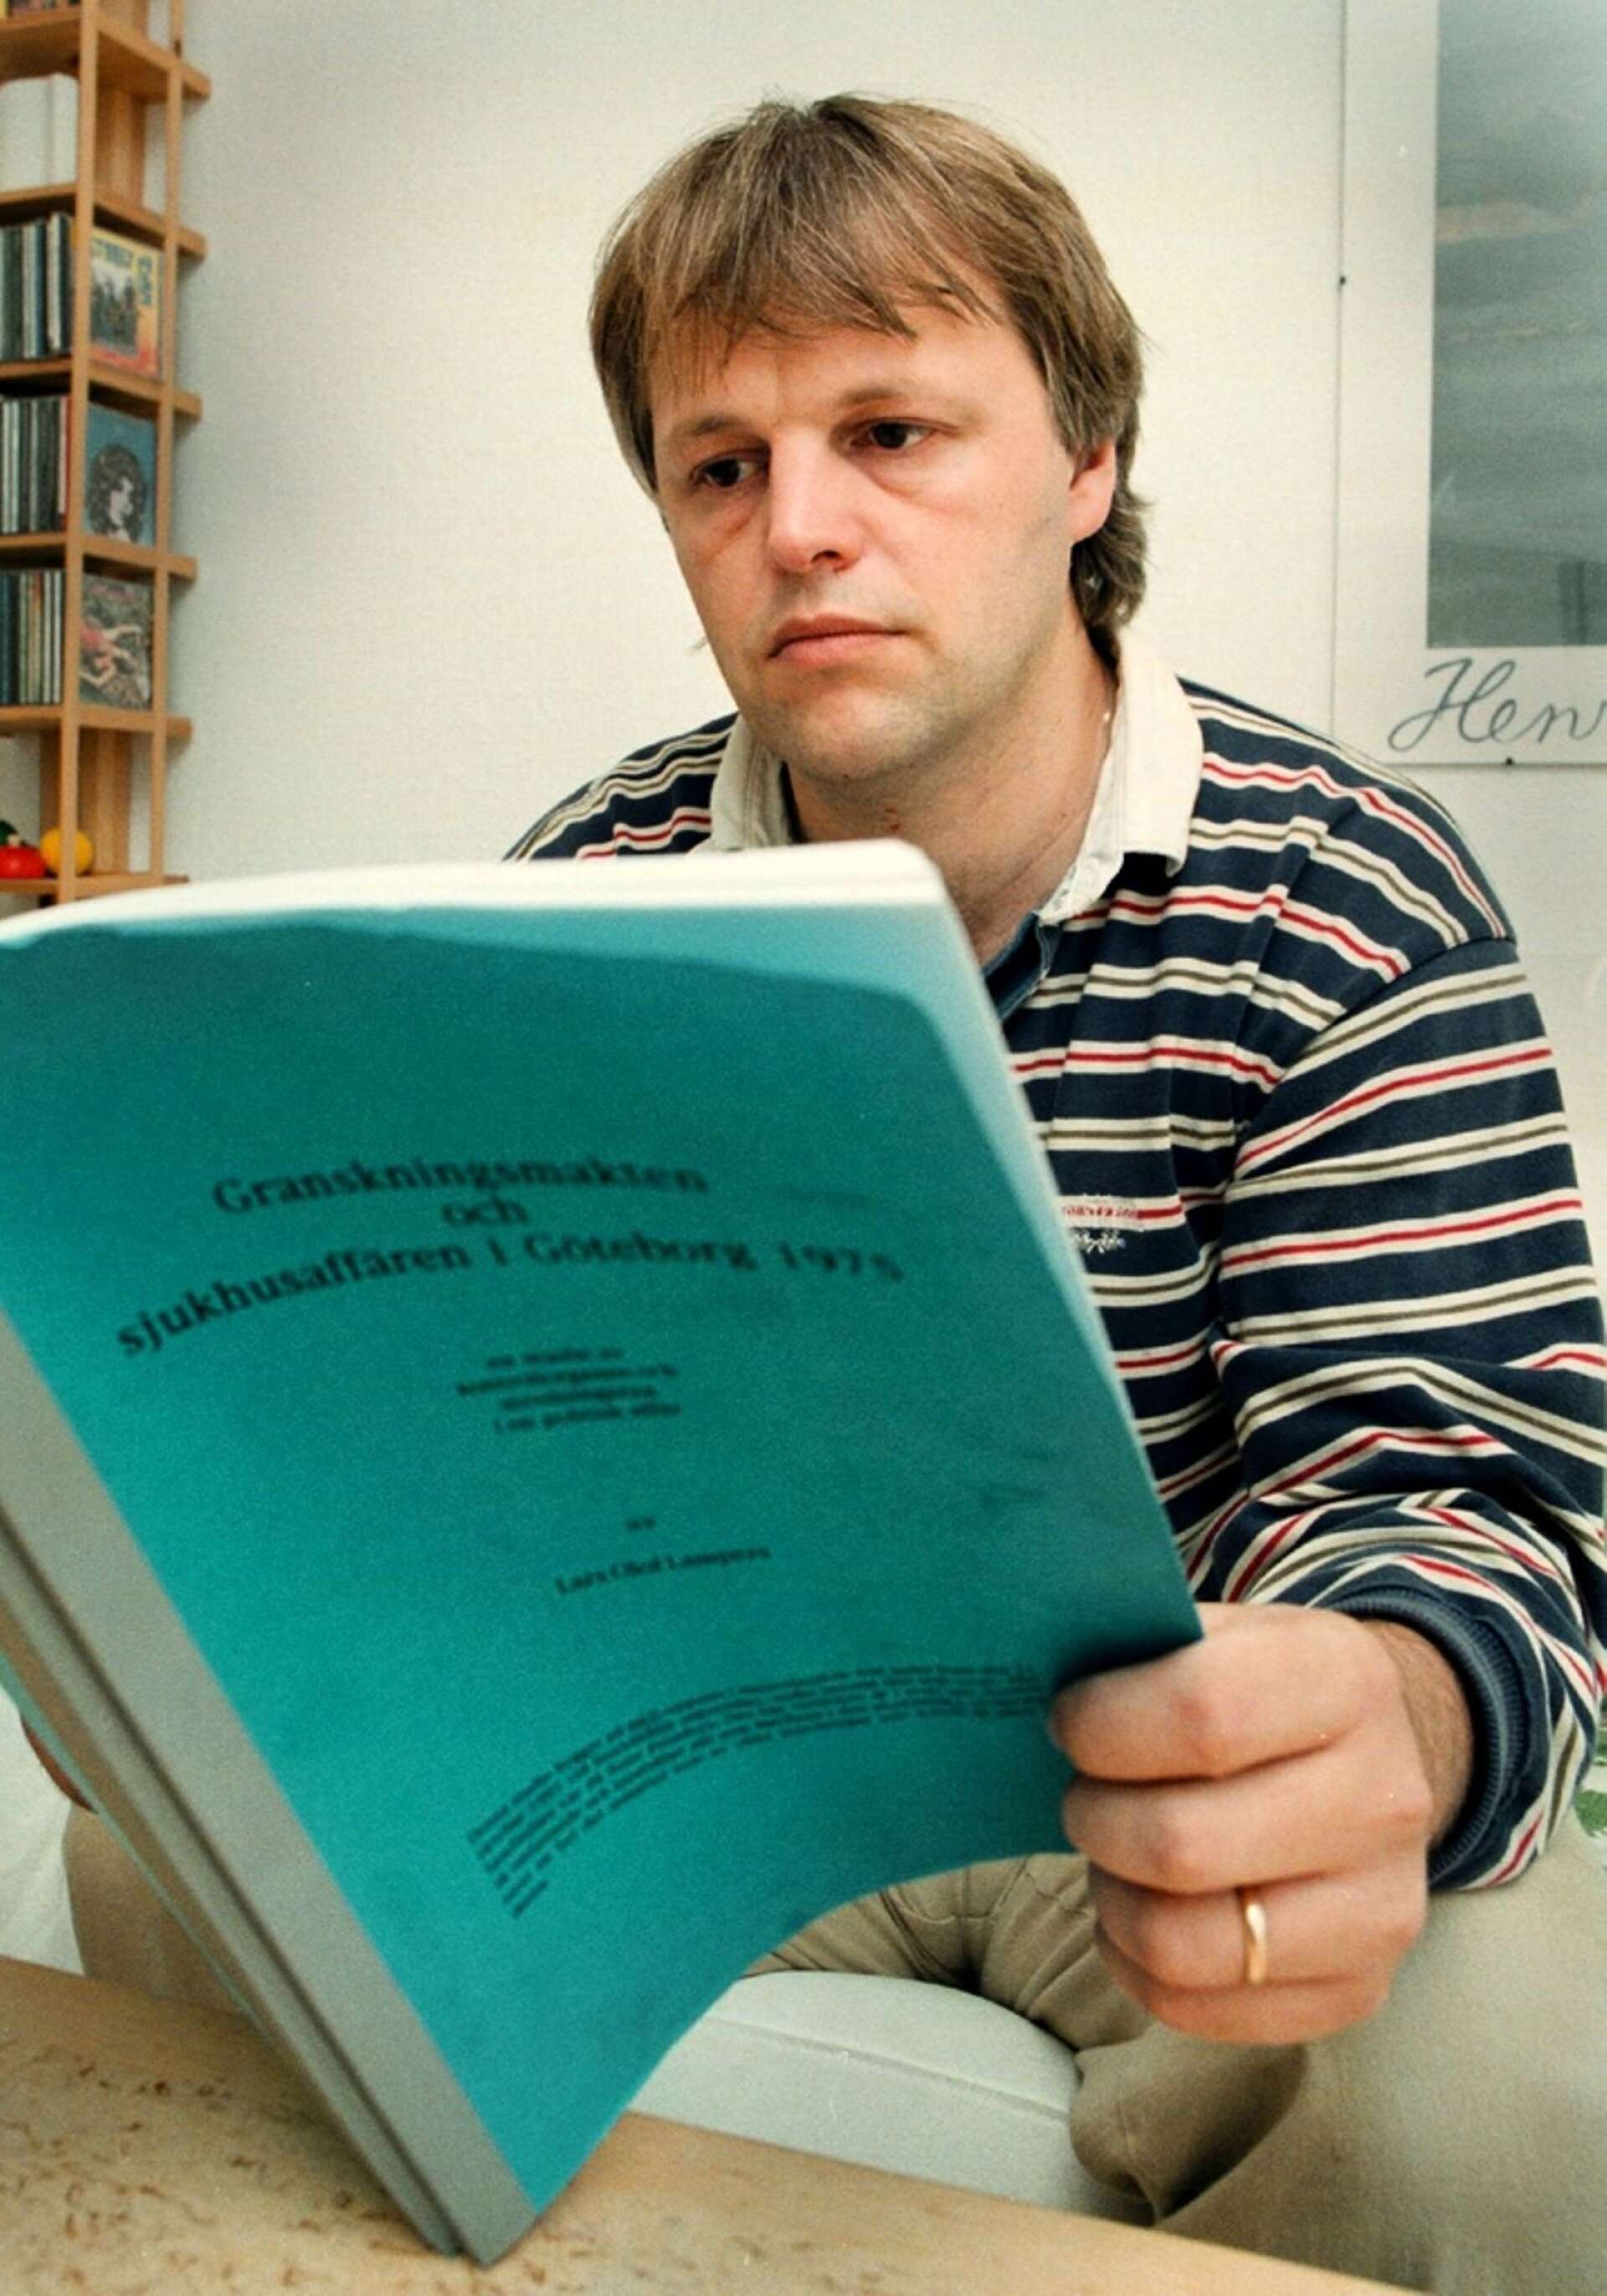 Efter studietiden arbetade Lars-Olof Lampers på justitiedepartementet. Han forskade bland annat om den svenska åsiktsregistreringen under efterkrigstiden.